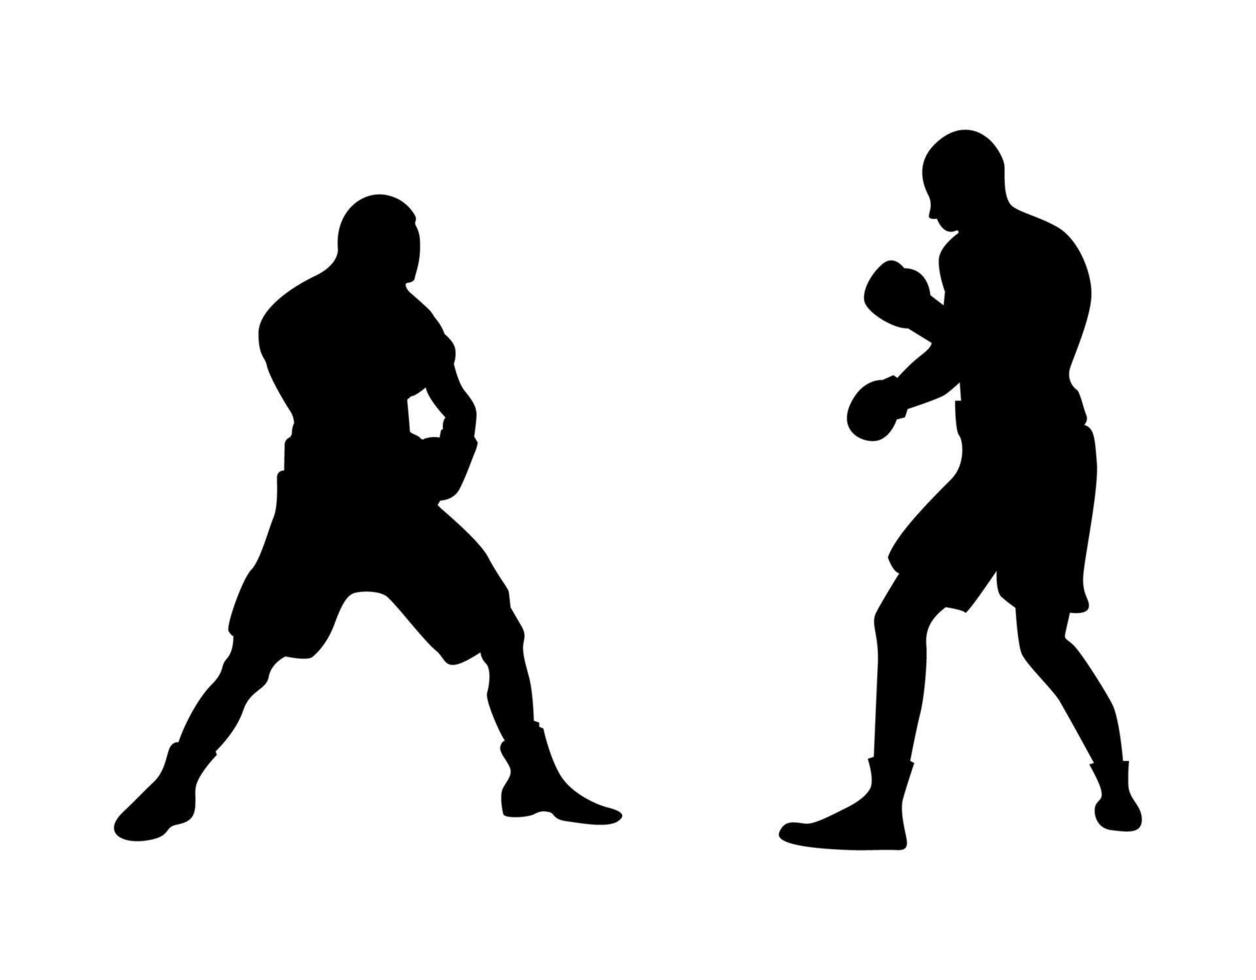 ilustração em vetor de silhueta de boxers